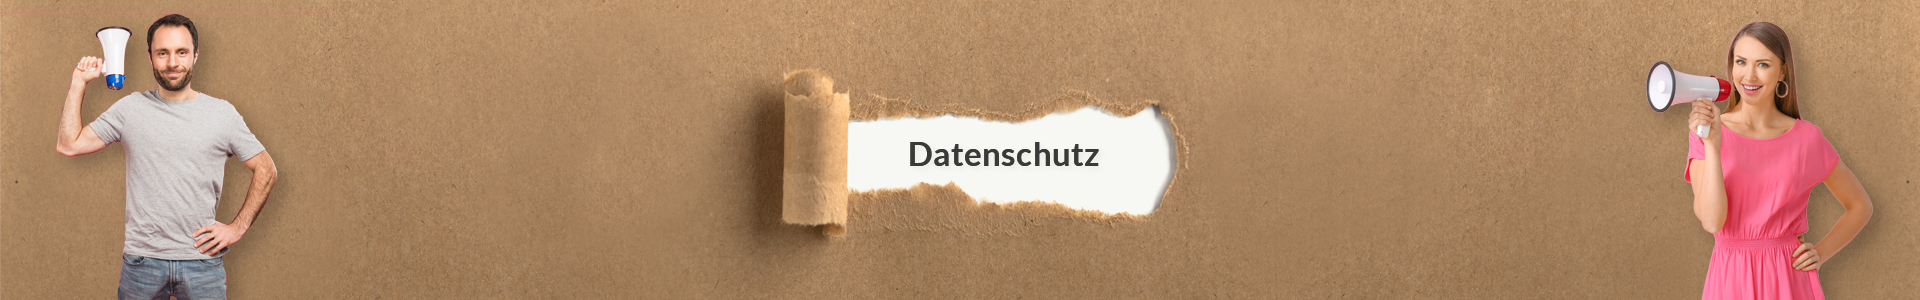 ebotschafter.com - banner - Datenschutz - D4b